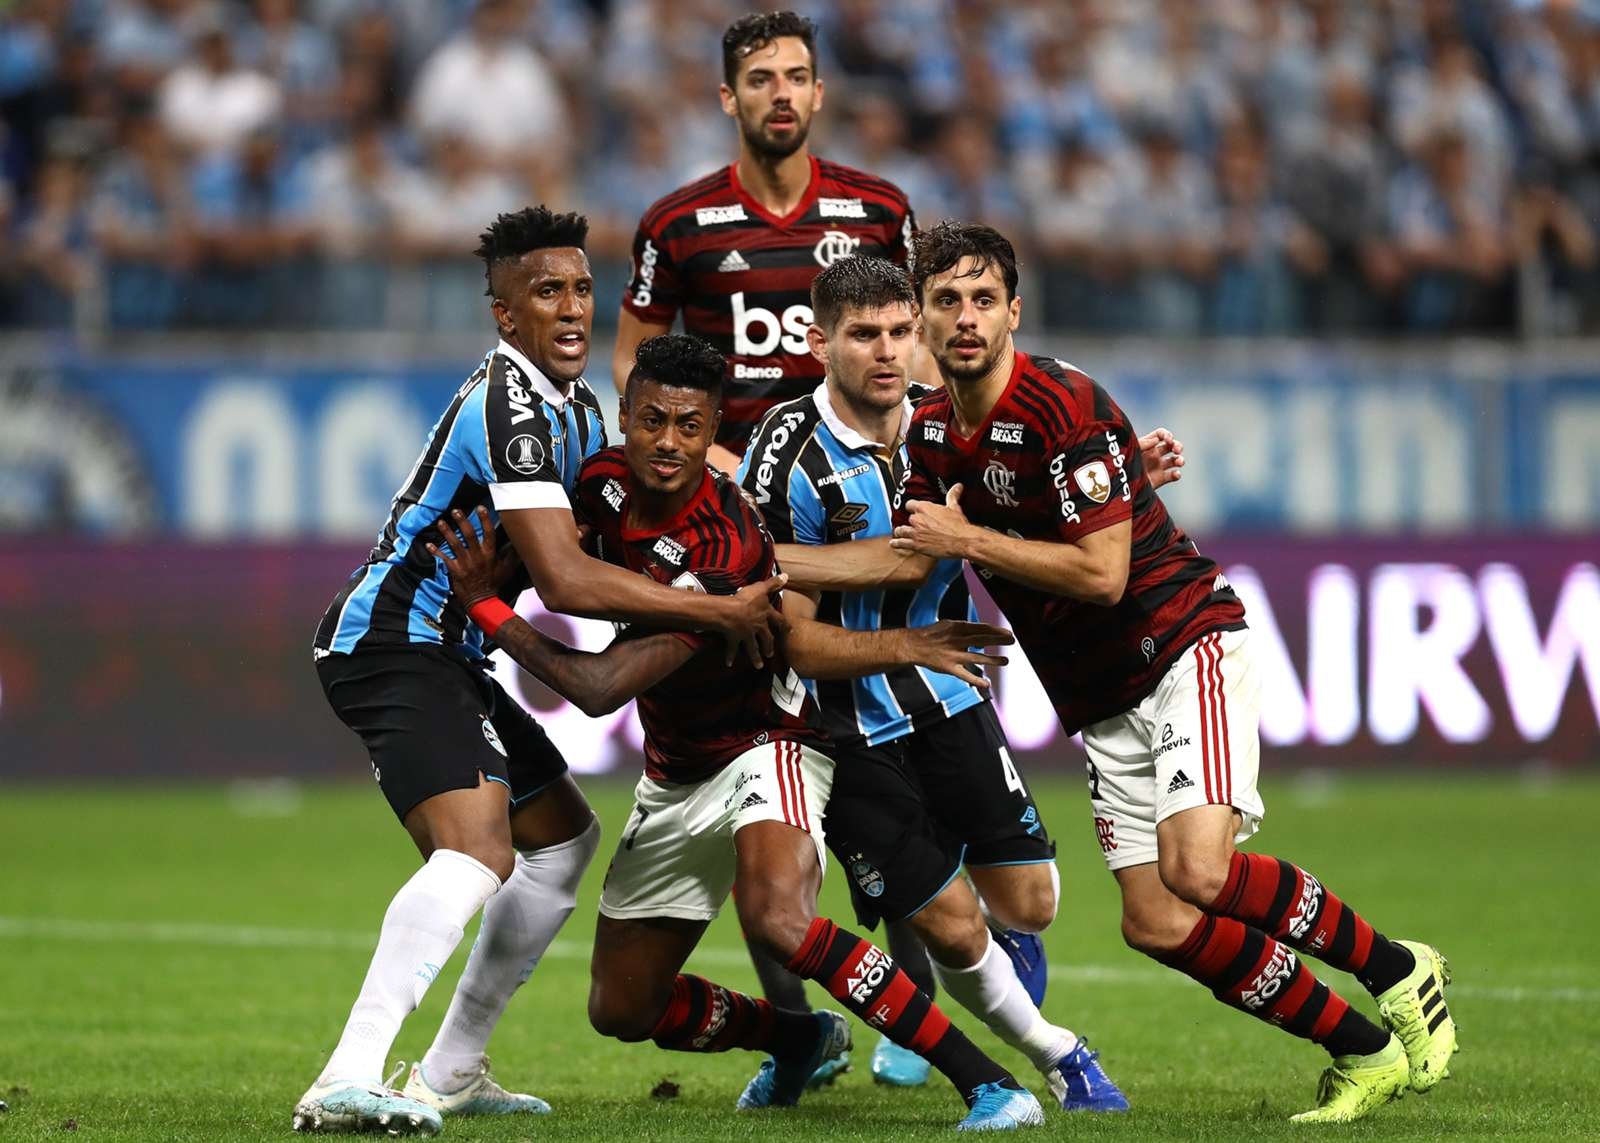 Flamengo e Grêmio decidem hoje quem vai à final da Libertadores